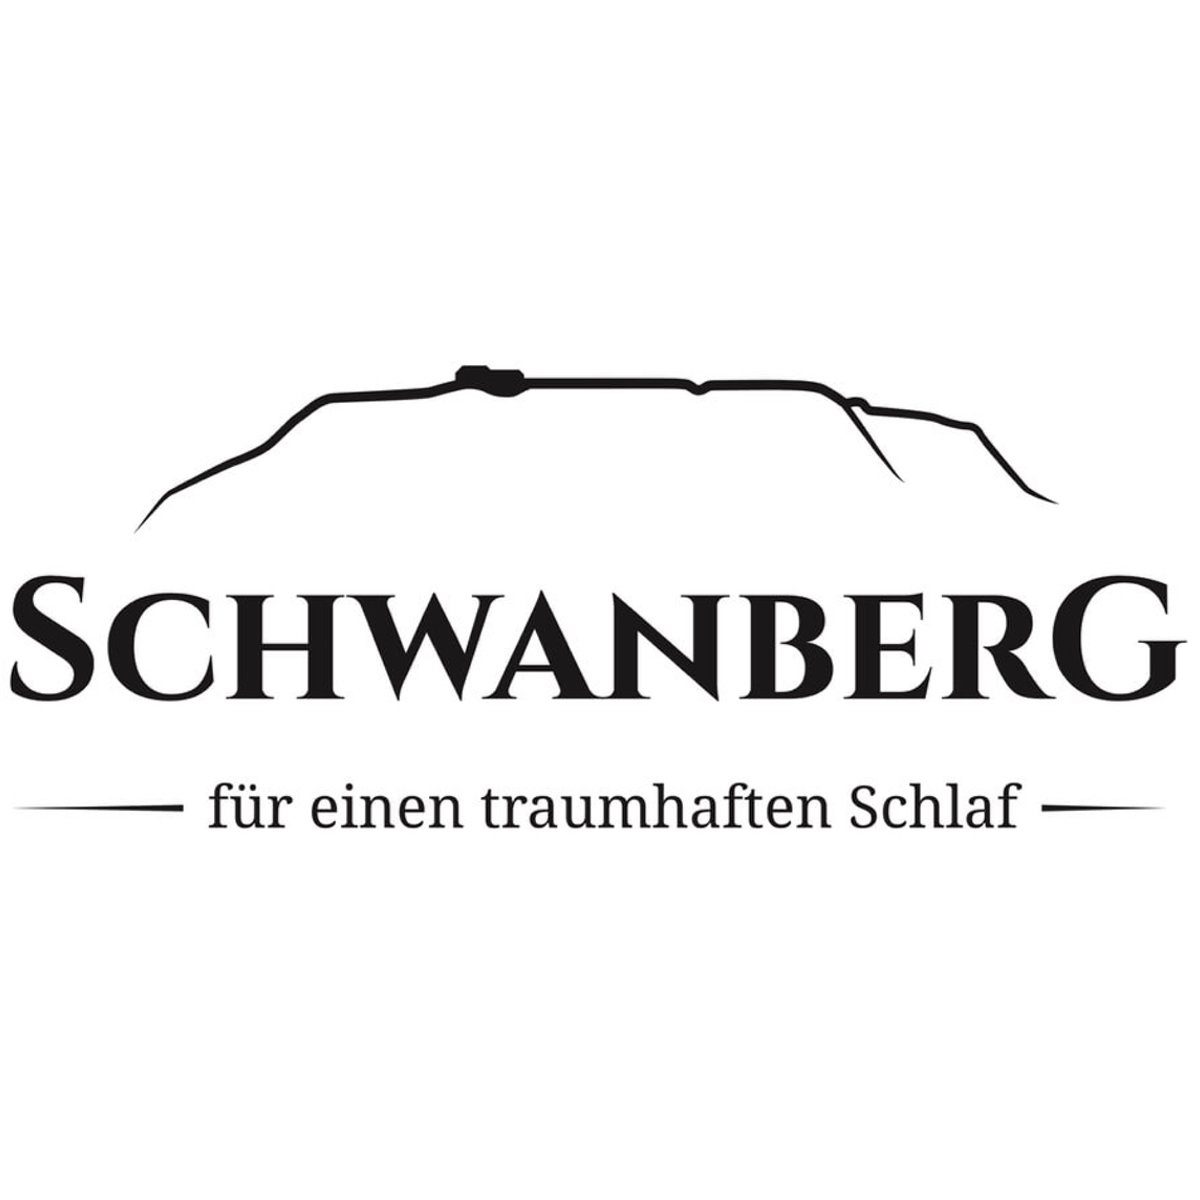 Schwanberg